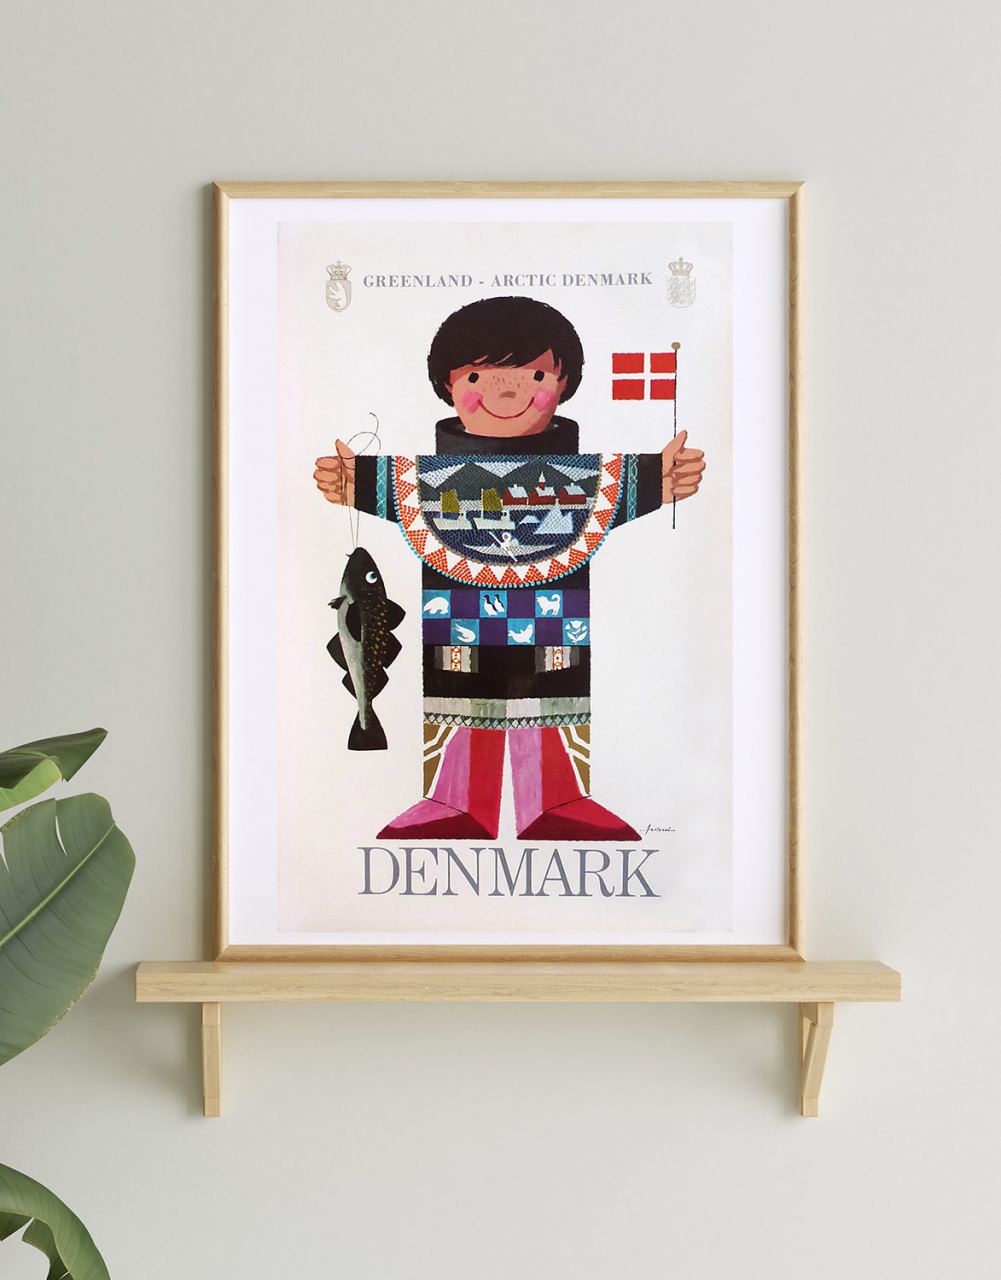 Ib Antoni Greenland - Arctic Denmark Plakat (36 × 57 cm)